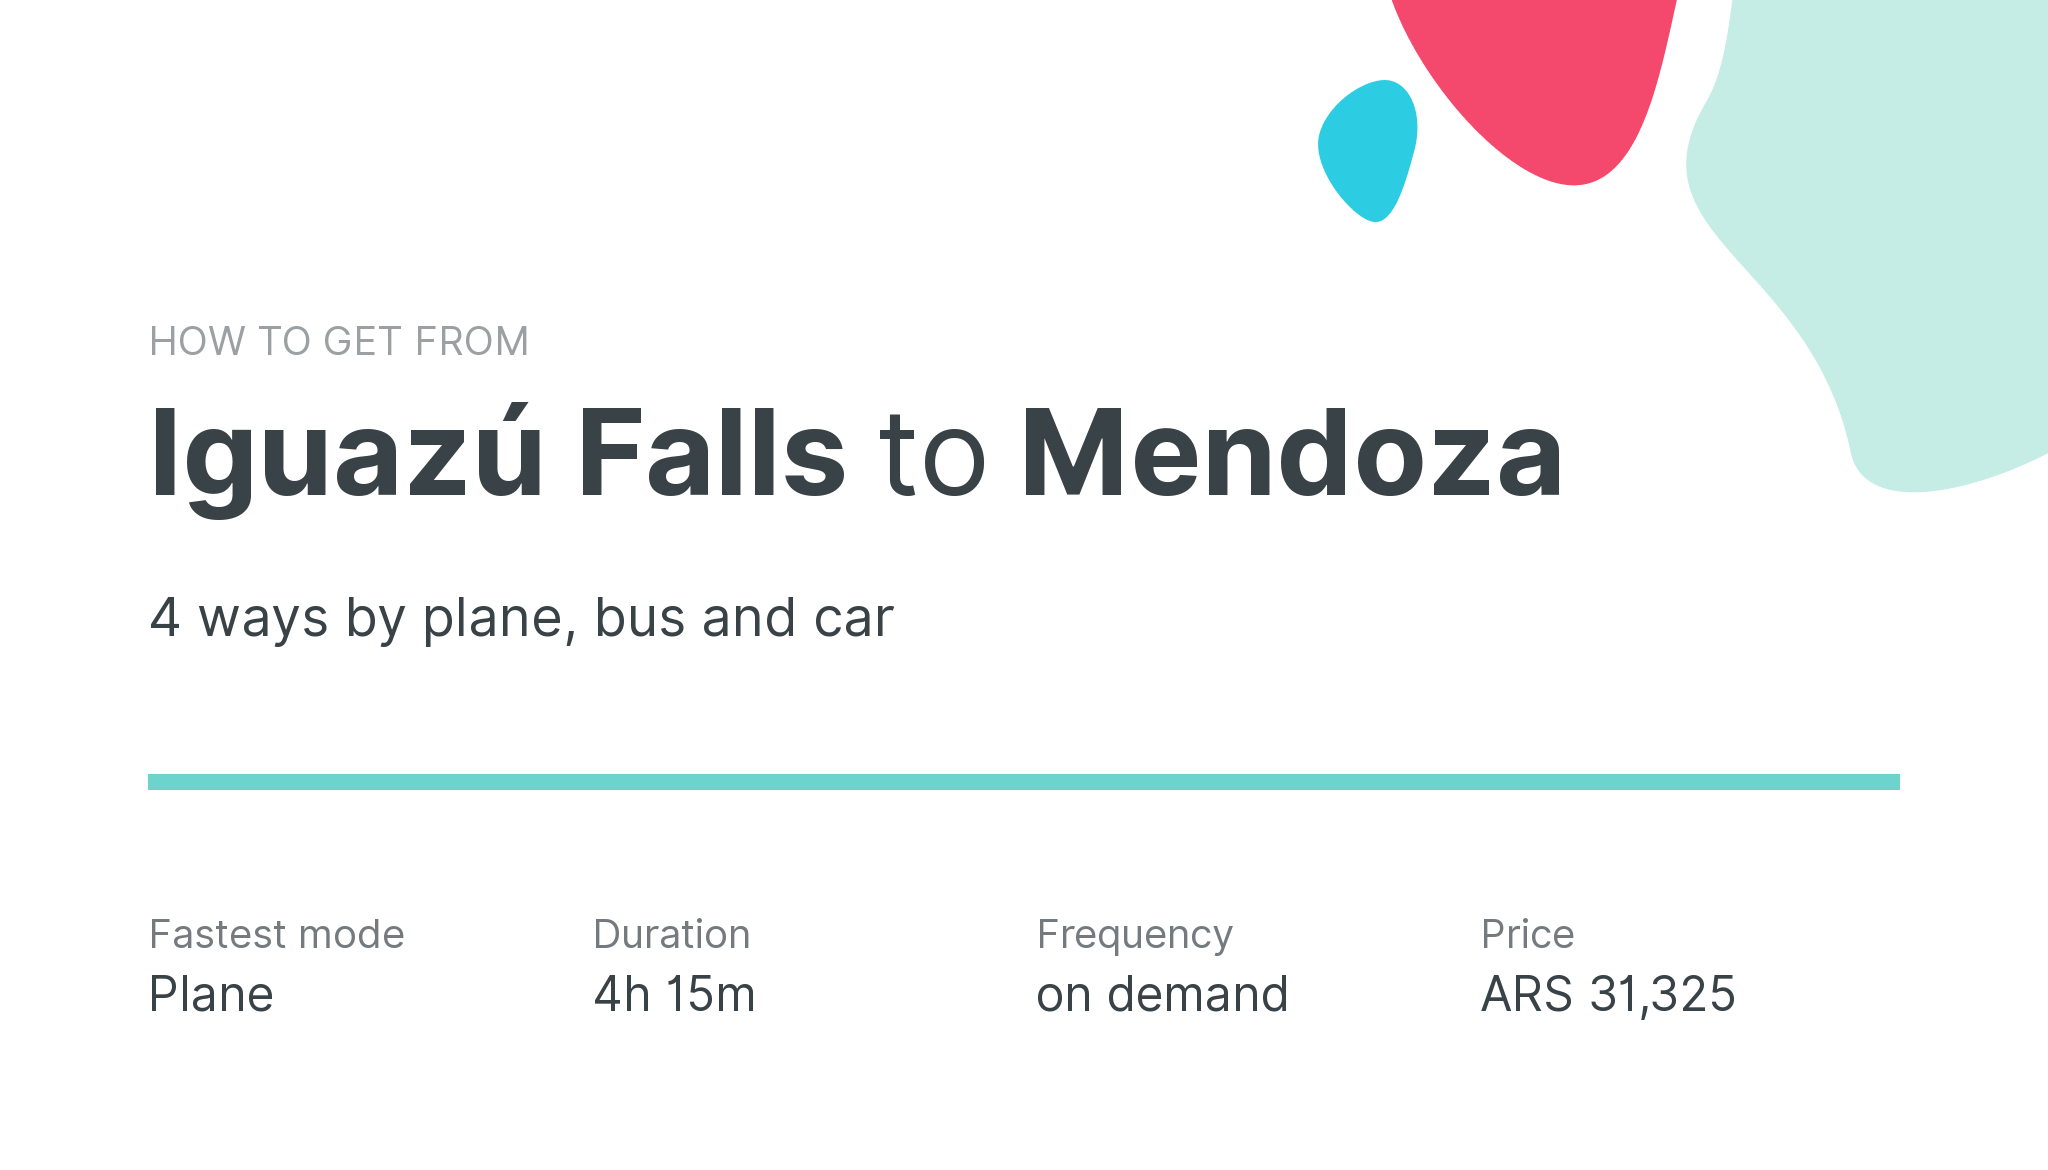 How do I get from Iguazú Falls to Mendoza